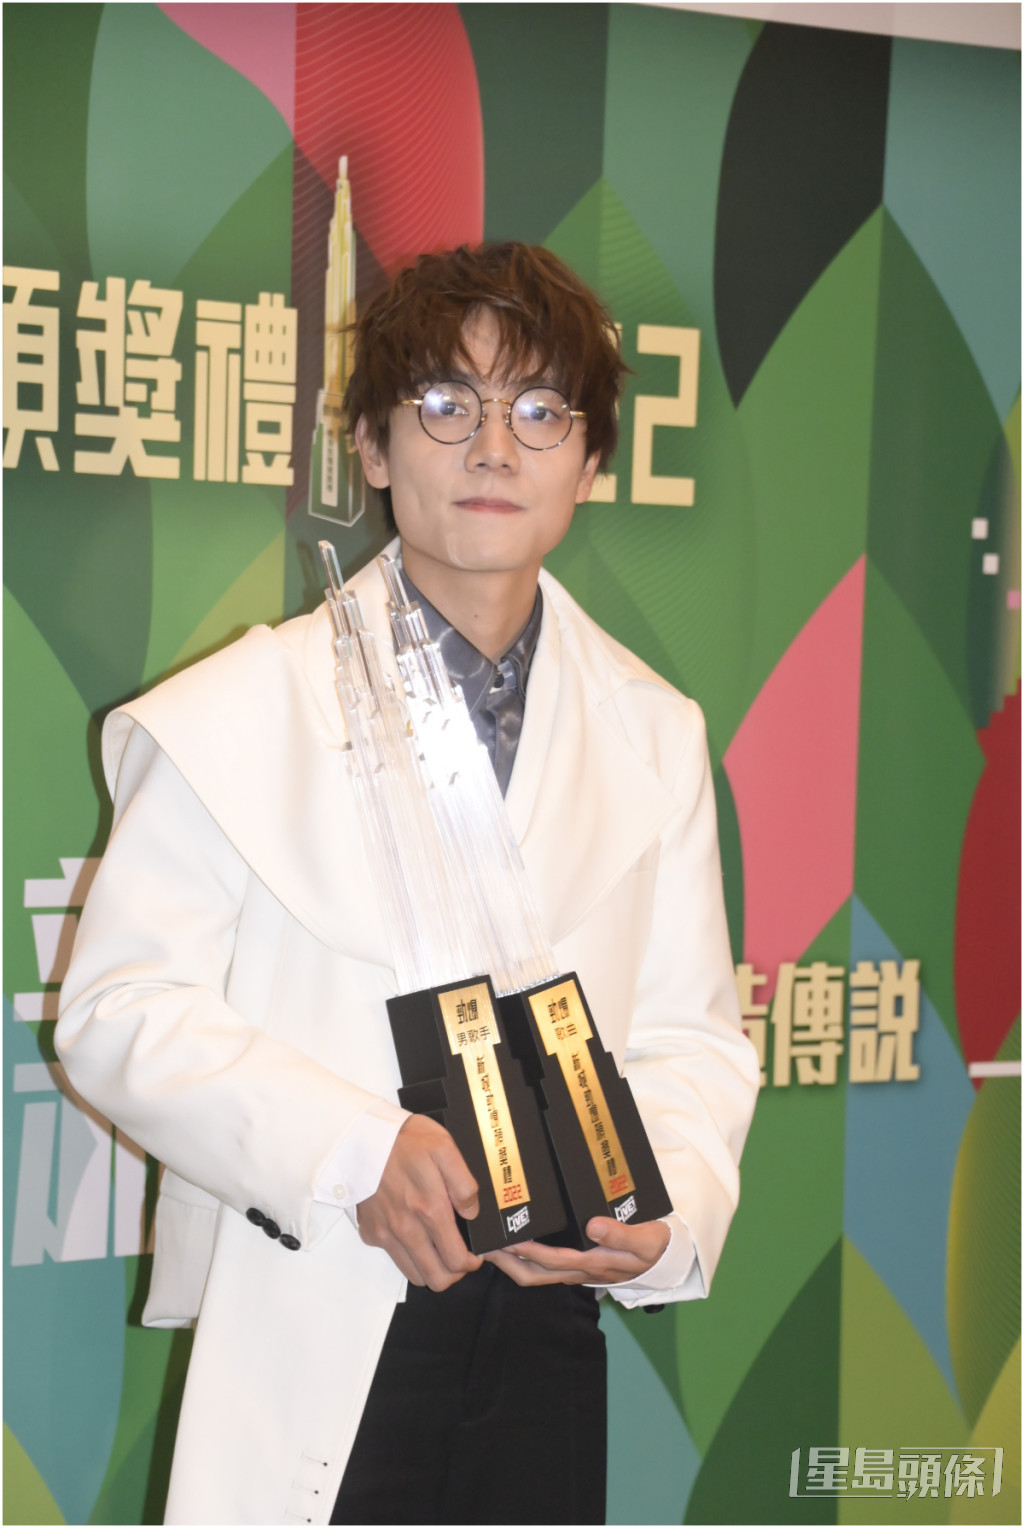 在叱咤及新城頒獎禮上掃了不少獎項的林家謙，在中文金曲投票名單中完全無影。